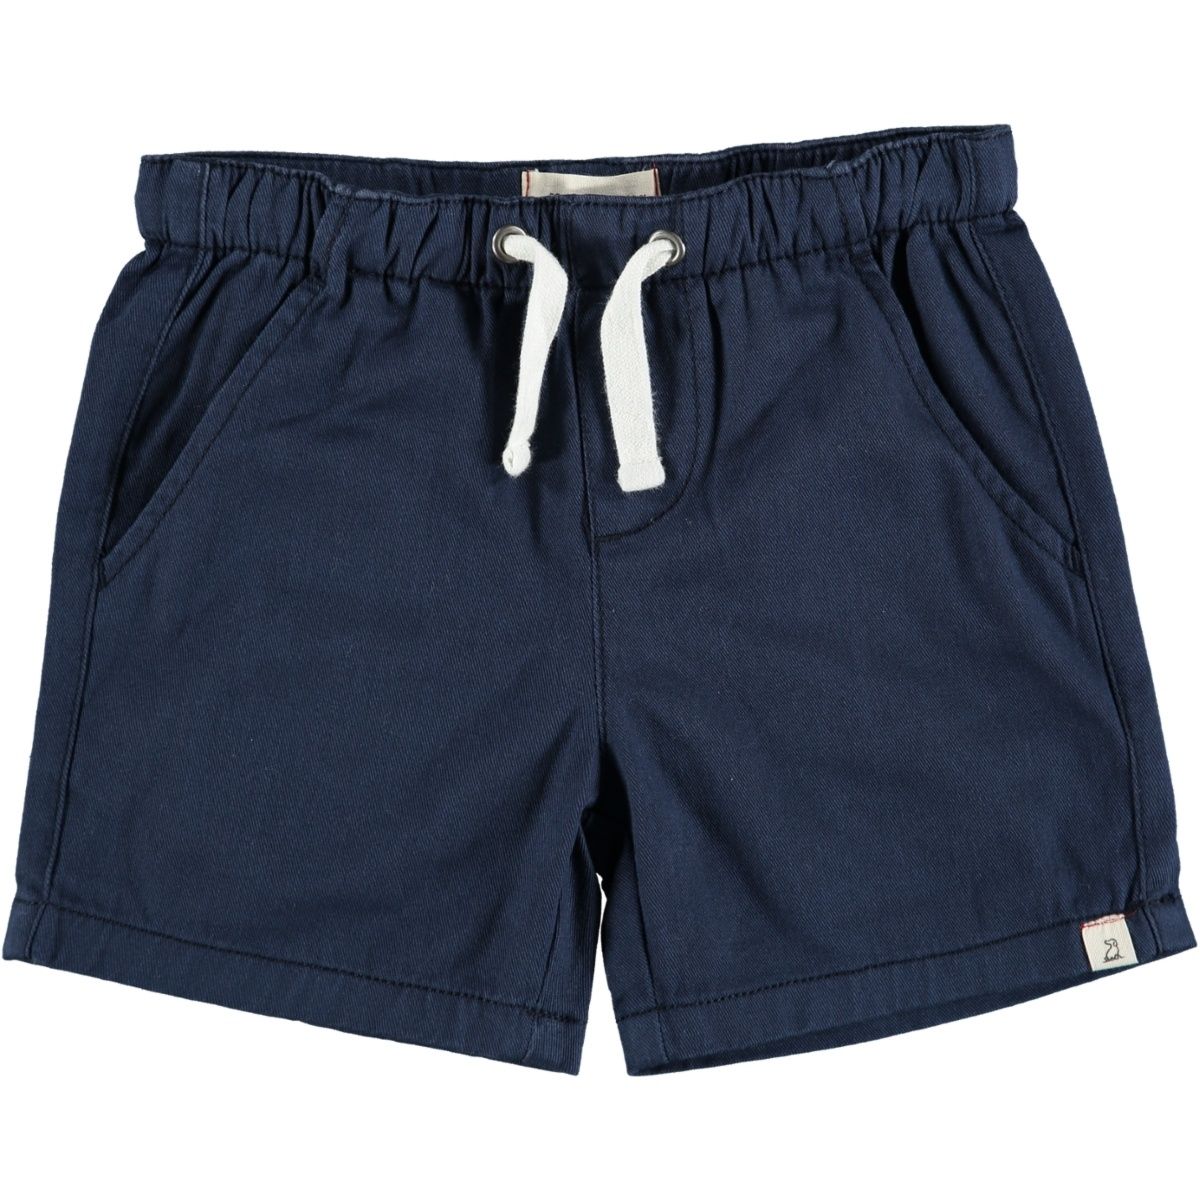 Navy Hugo Twill Shorts - Twinkle Twinkle Little One